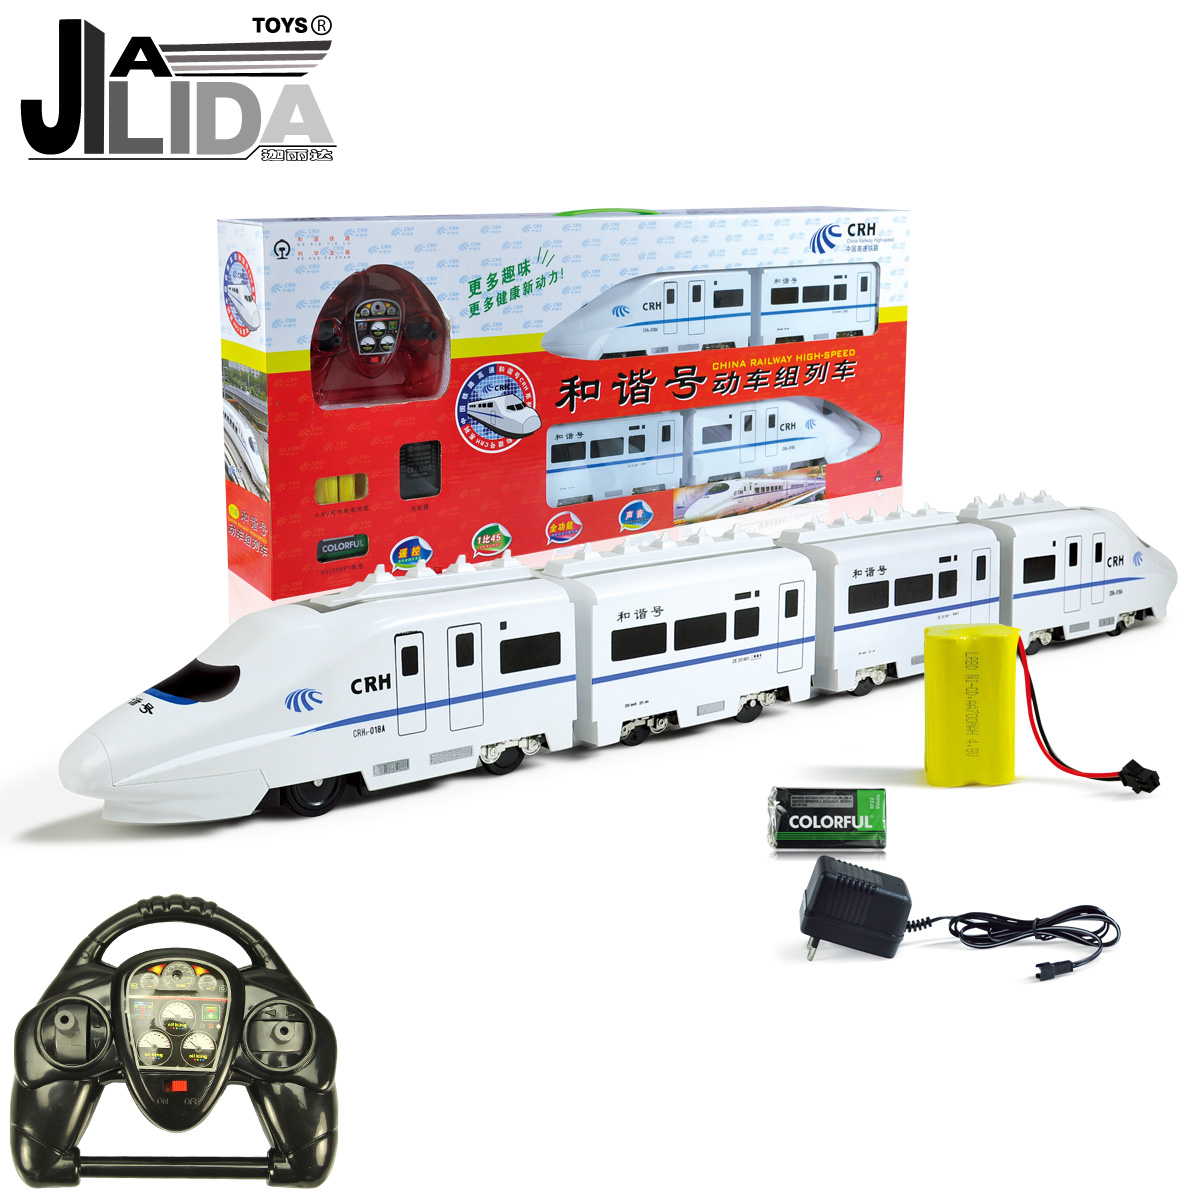 超大充电高铁和谐号动车组火车模型遥控儿童玩具     新奇达折扣优惠信息